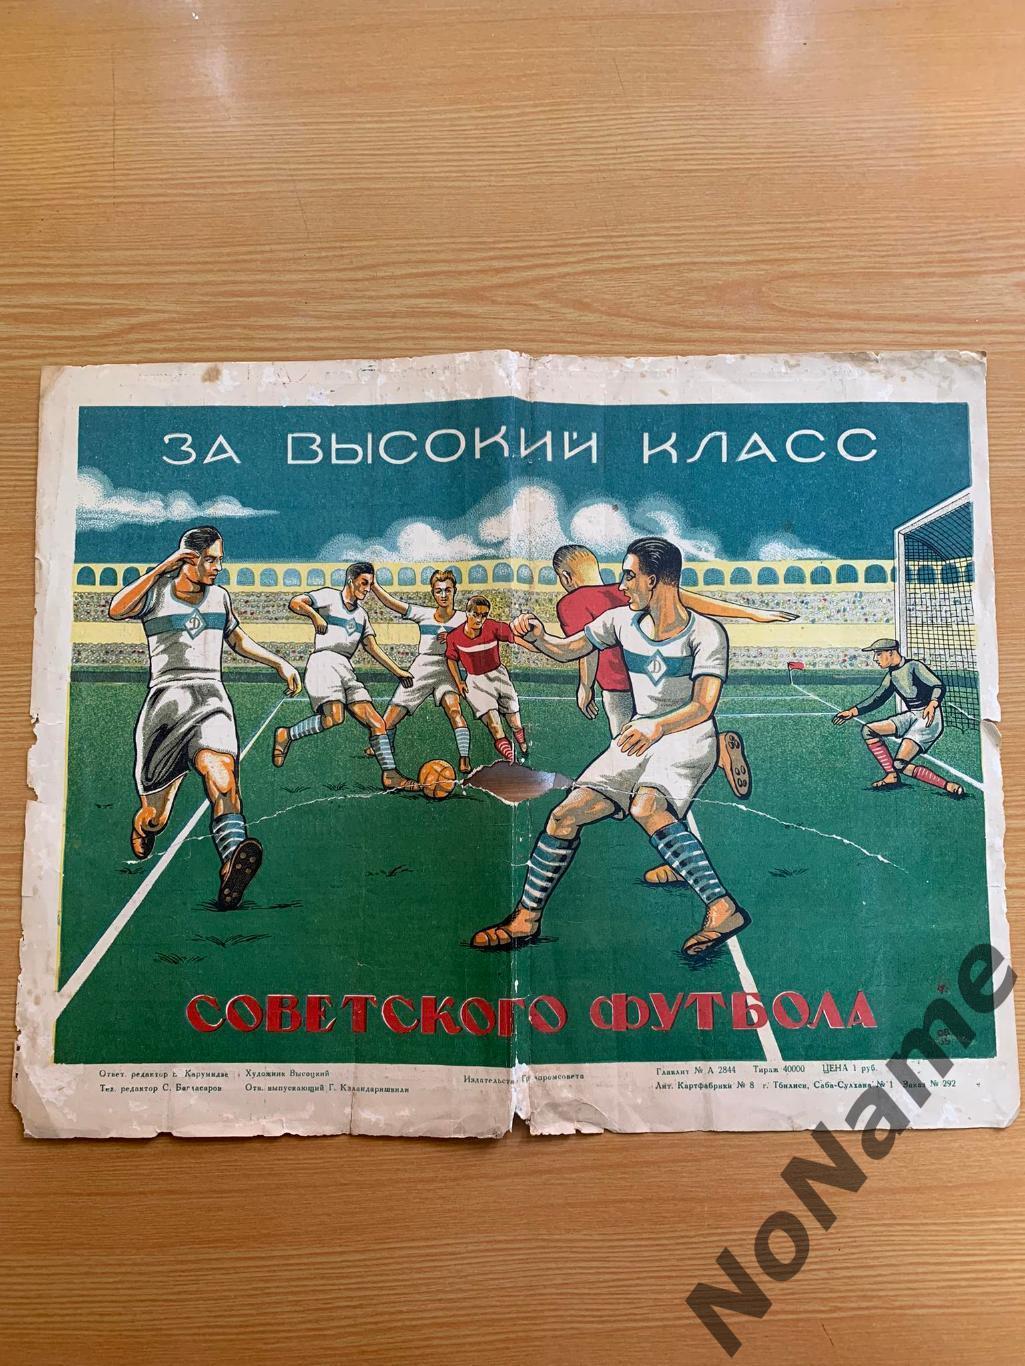 Итоговая таблицапервенства СССР по футболу.Тбилиси, 1939 г.